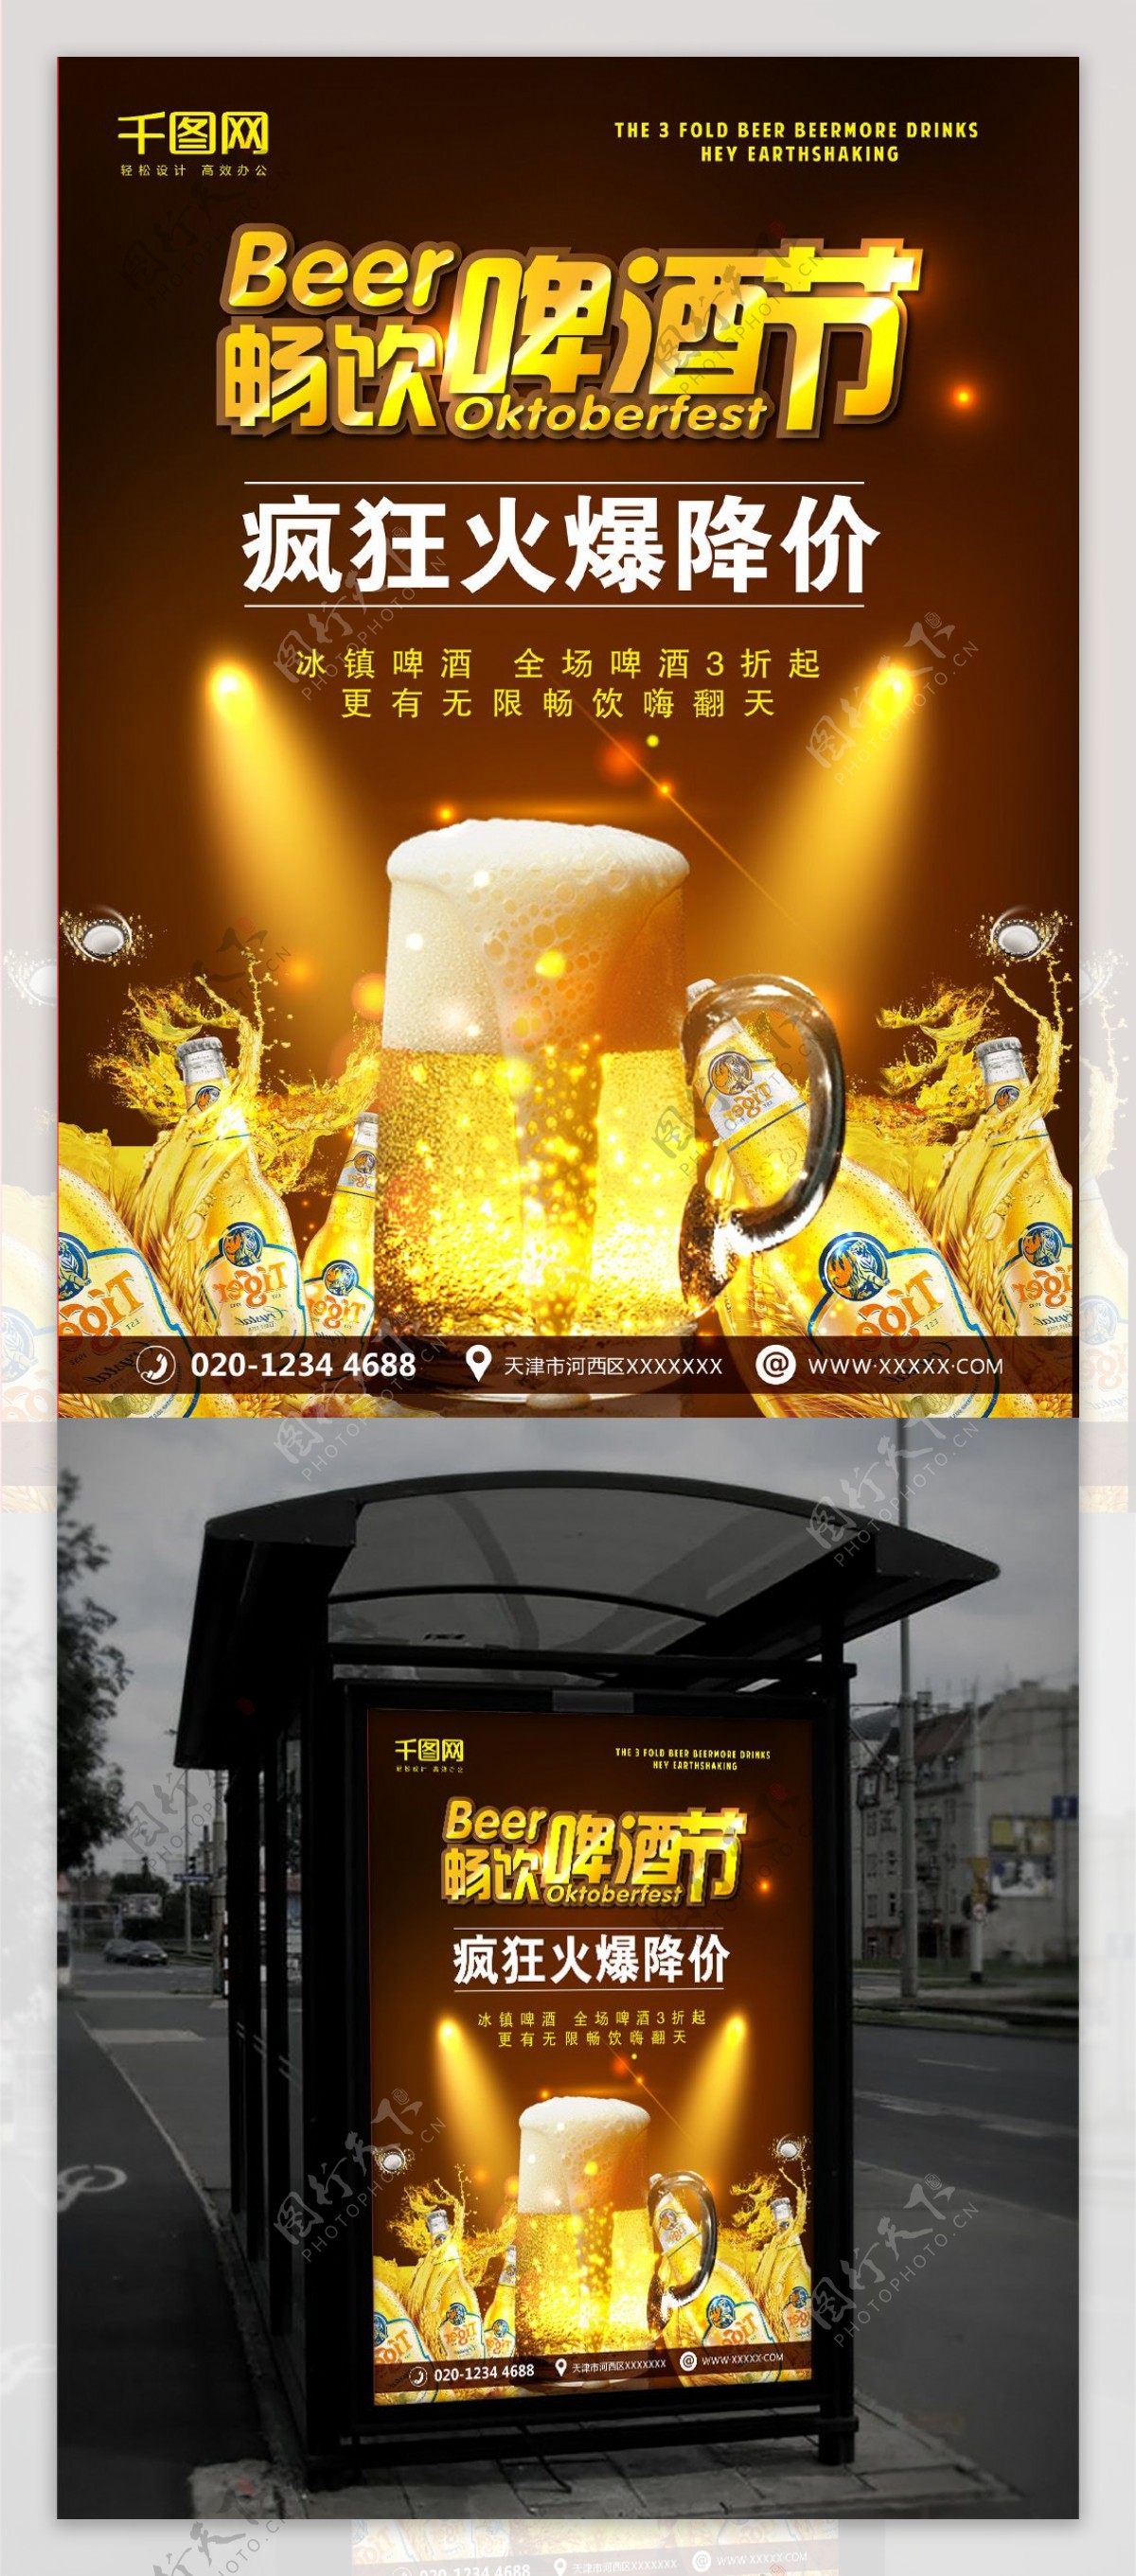 啤酒节啤酒酒吧促销宣传海报